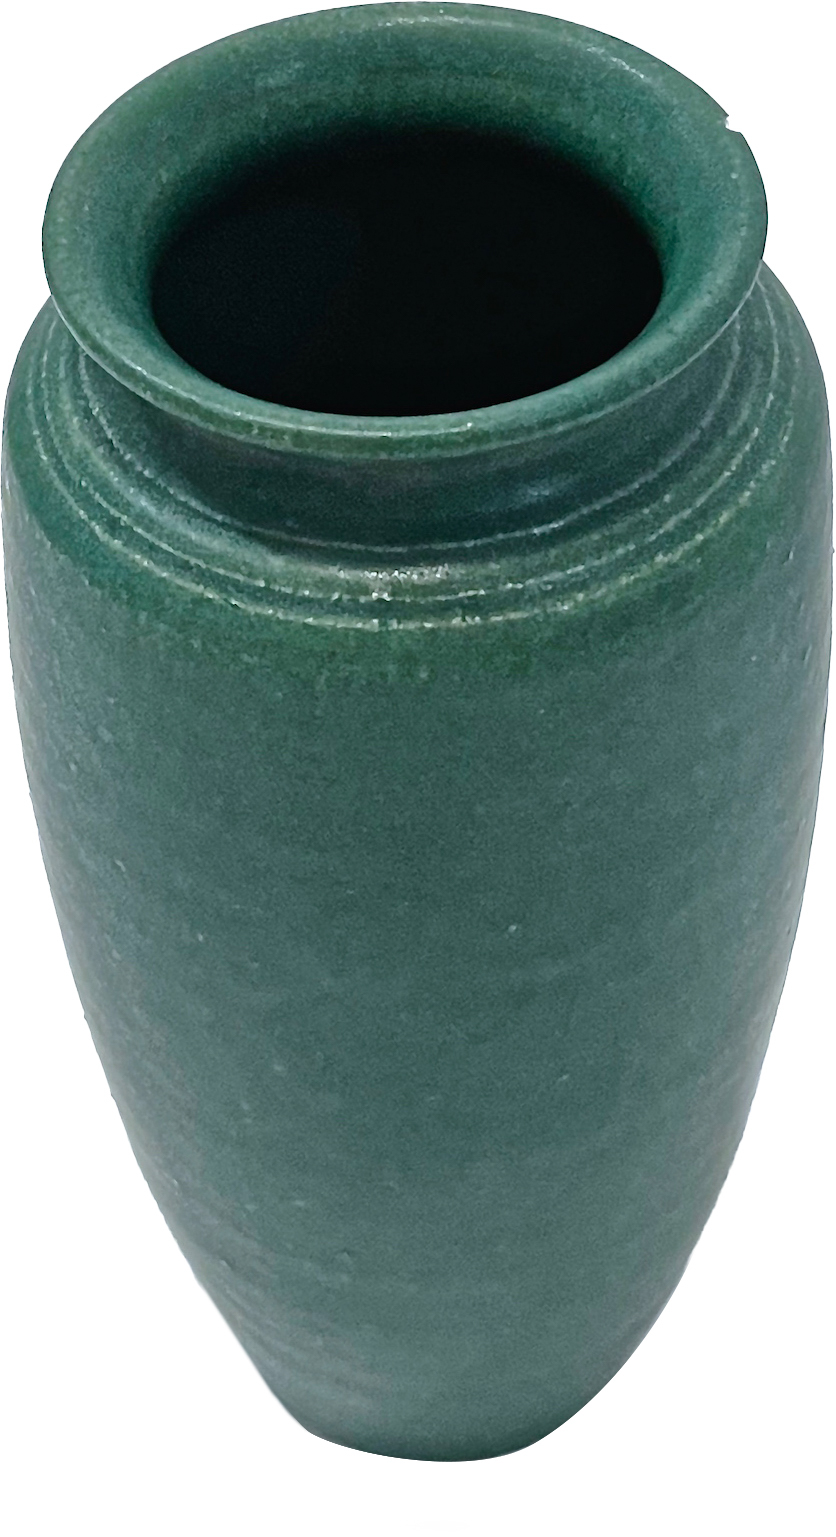 Japanese Art Nouveau Style Green Vase~P77661973